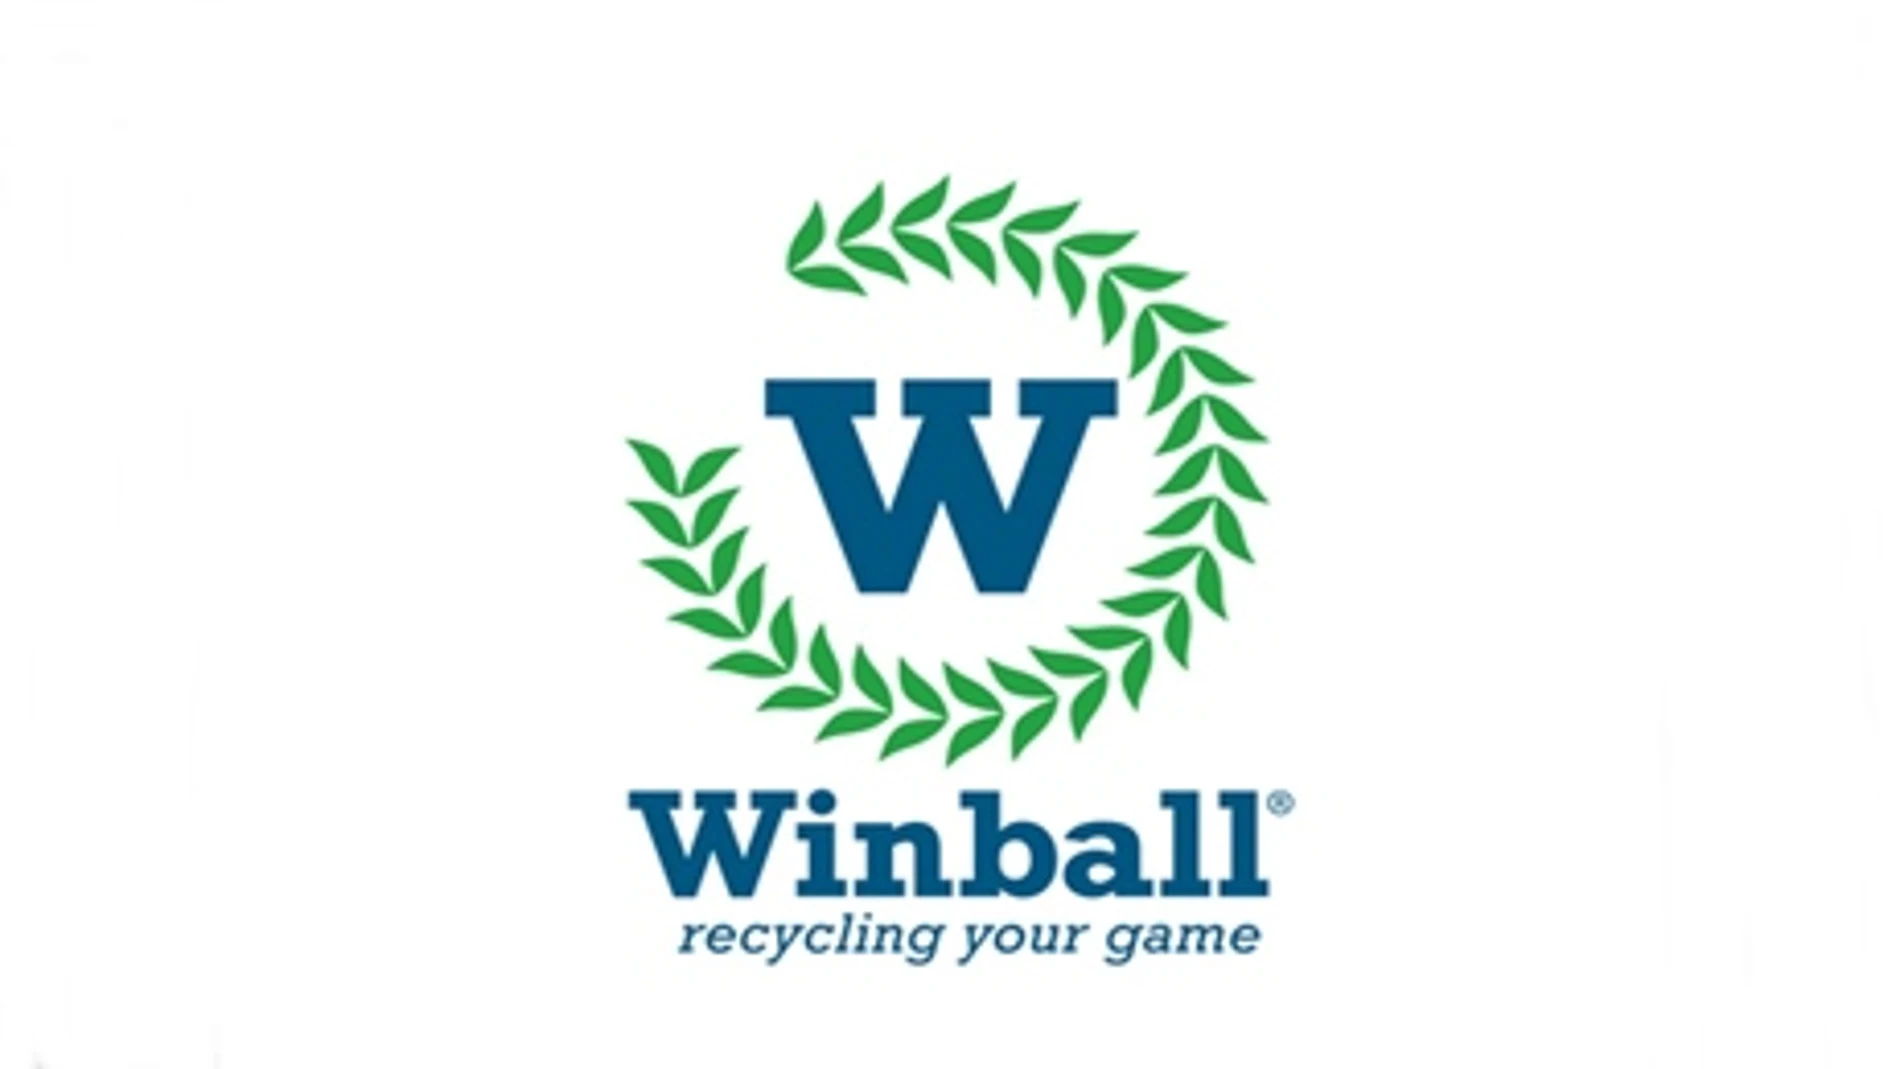 Winball